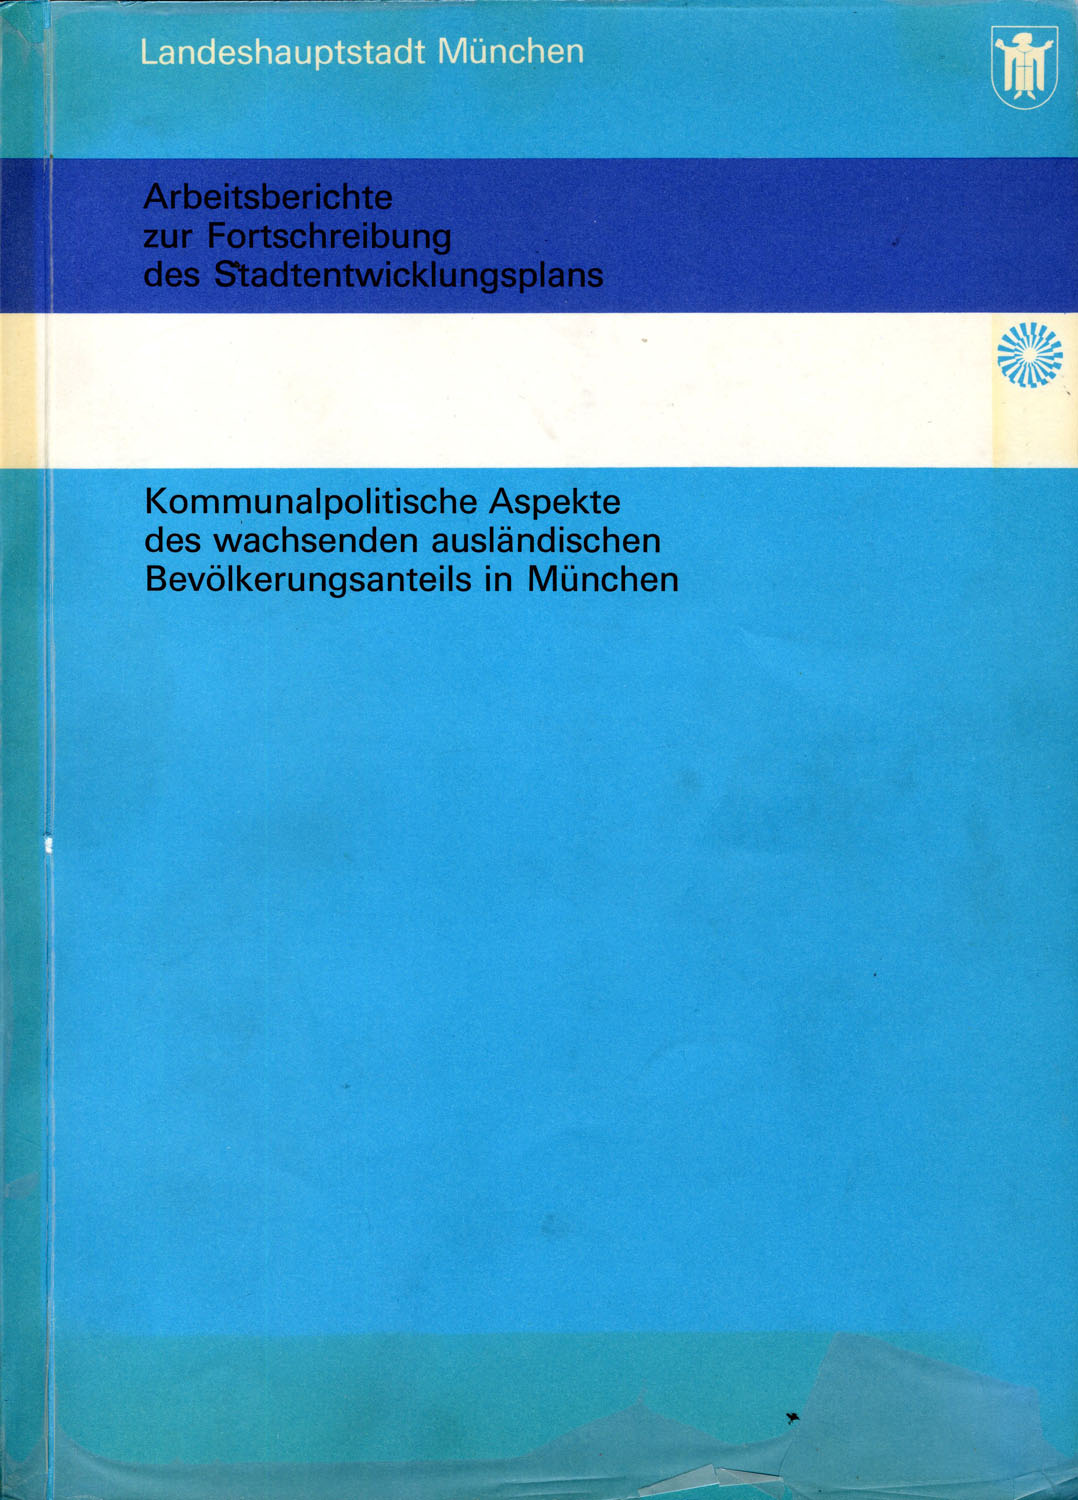 Blauer Bucheinband mit dem Titel: Kommunalpolitische Aspekte des wachsenden ausländischen Bevölkerungsanteils in München.